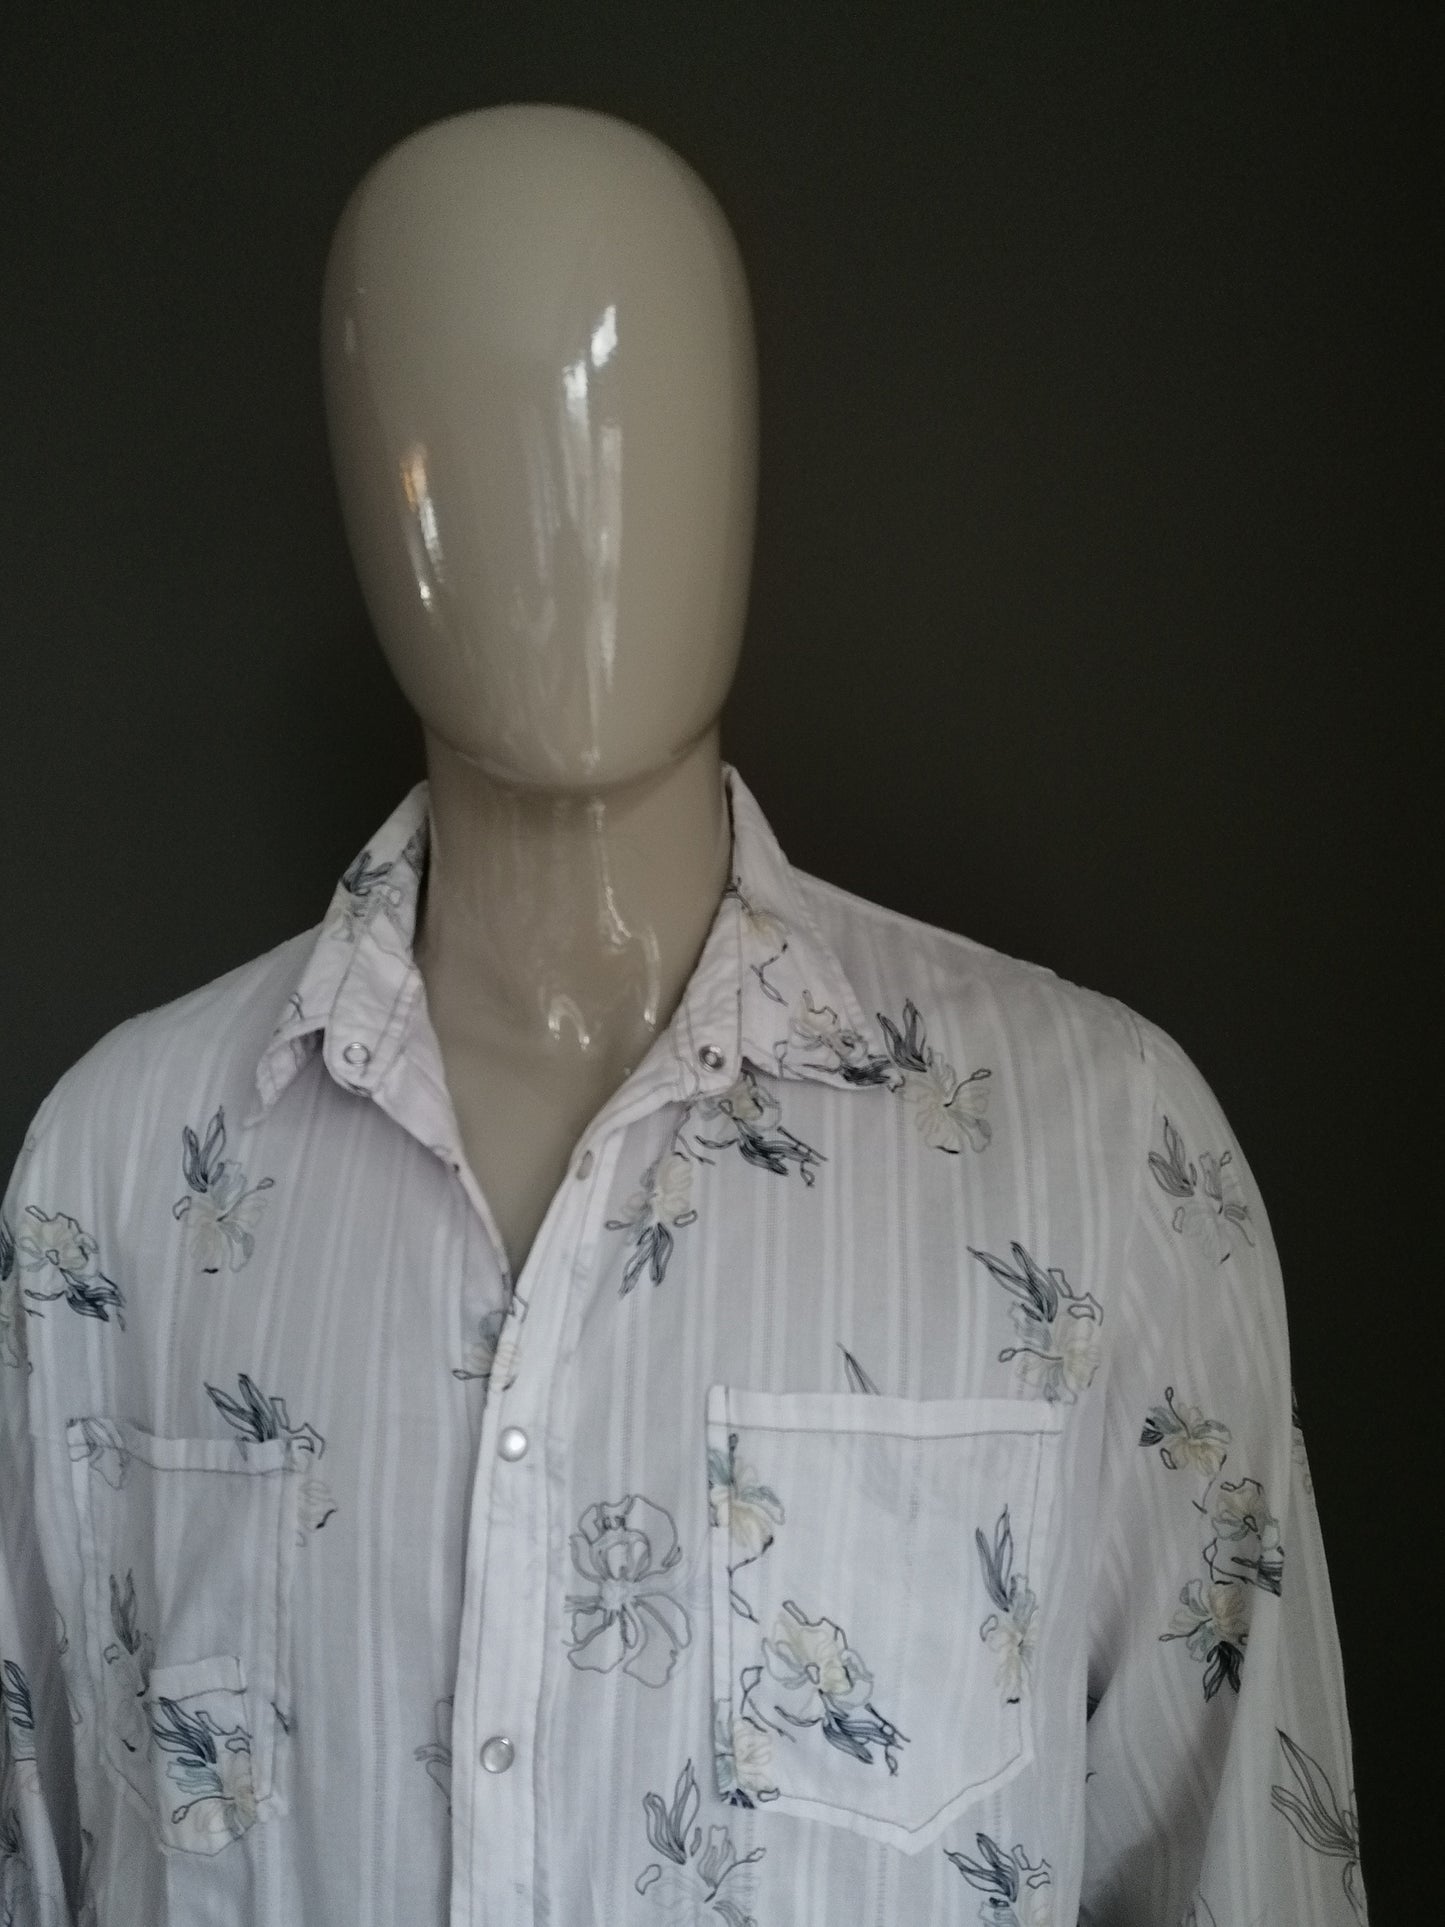 Camisa de la vendimia de Histreet con tachuelas de prensa. Impresión de motivos florales azules beige. Tamaño XXL / 2XL